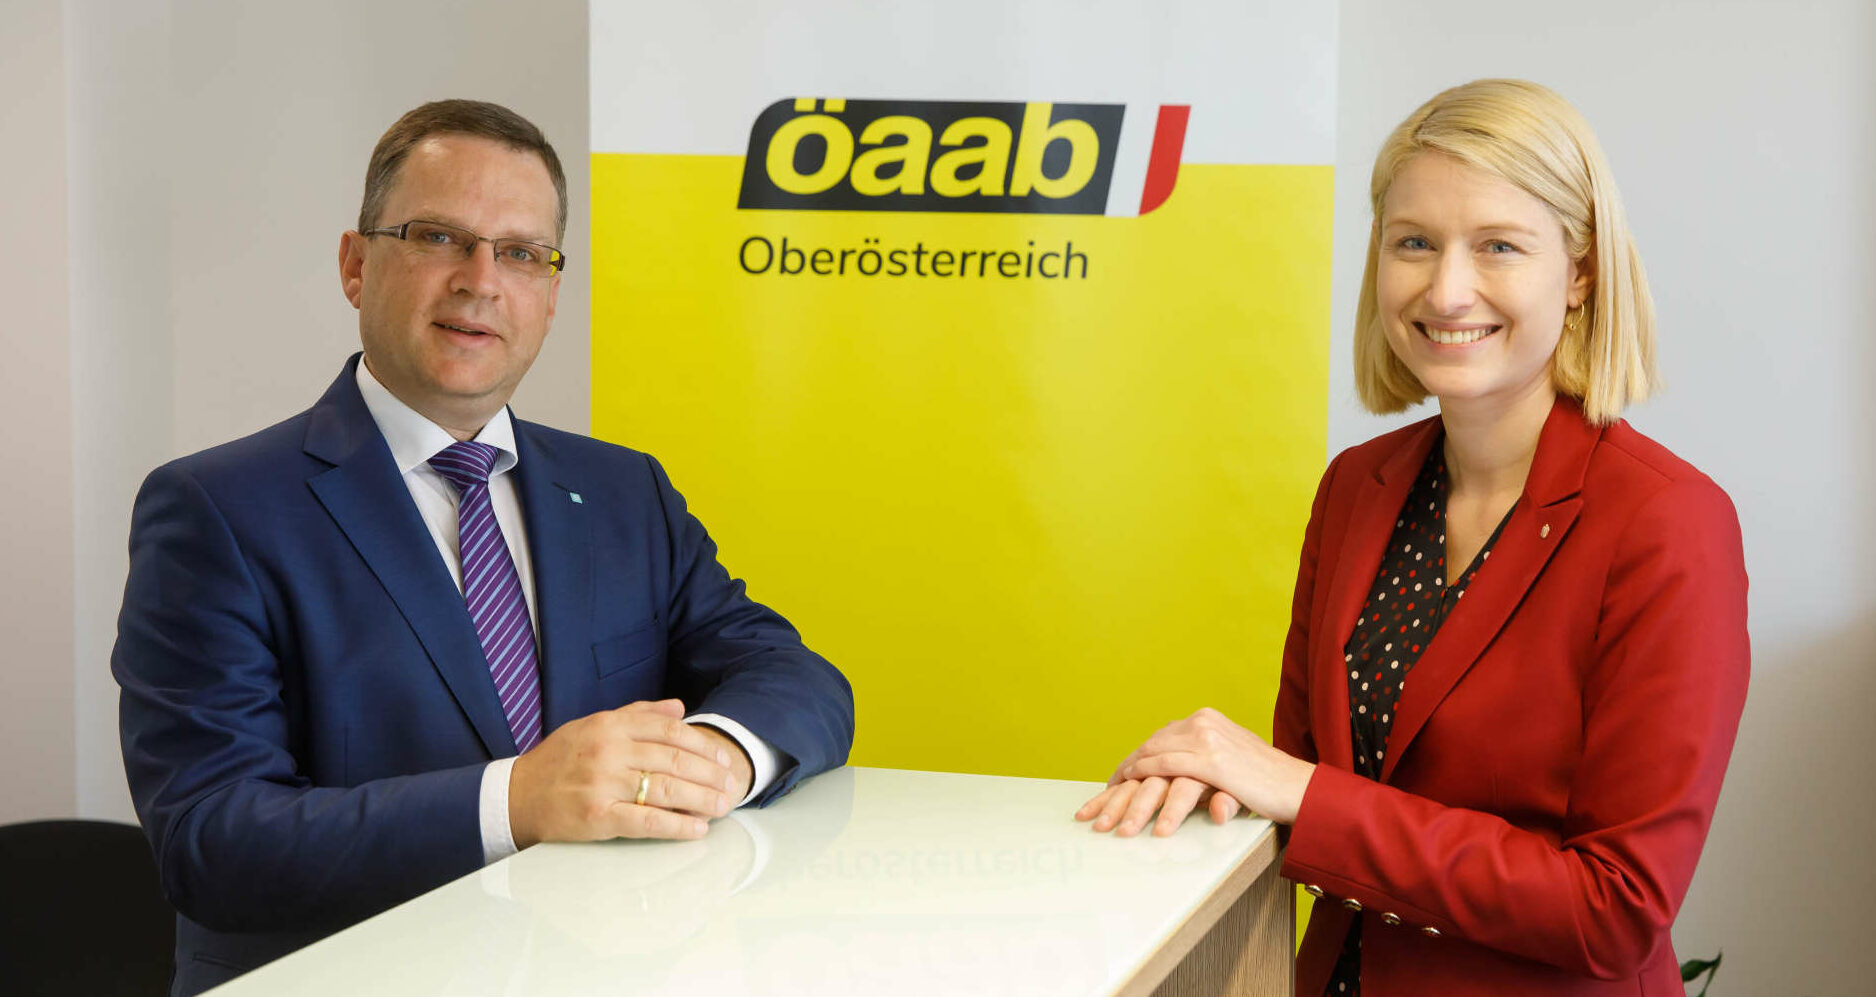 Der ÖAAB OÖ ist stark vernetzt und gut aufgestellt, darin sind sich ÖAAB-Bundesobmann August Wöginger und die designierte Landesobfra LH-Stv. Christine Haberlander einig.